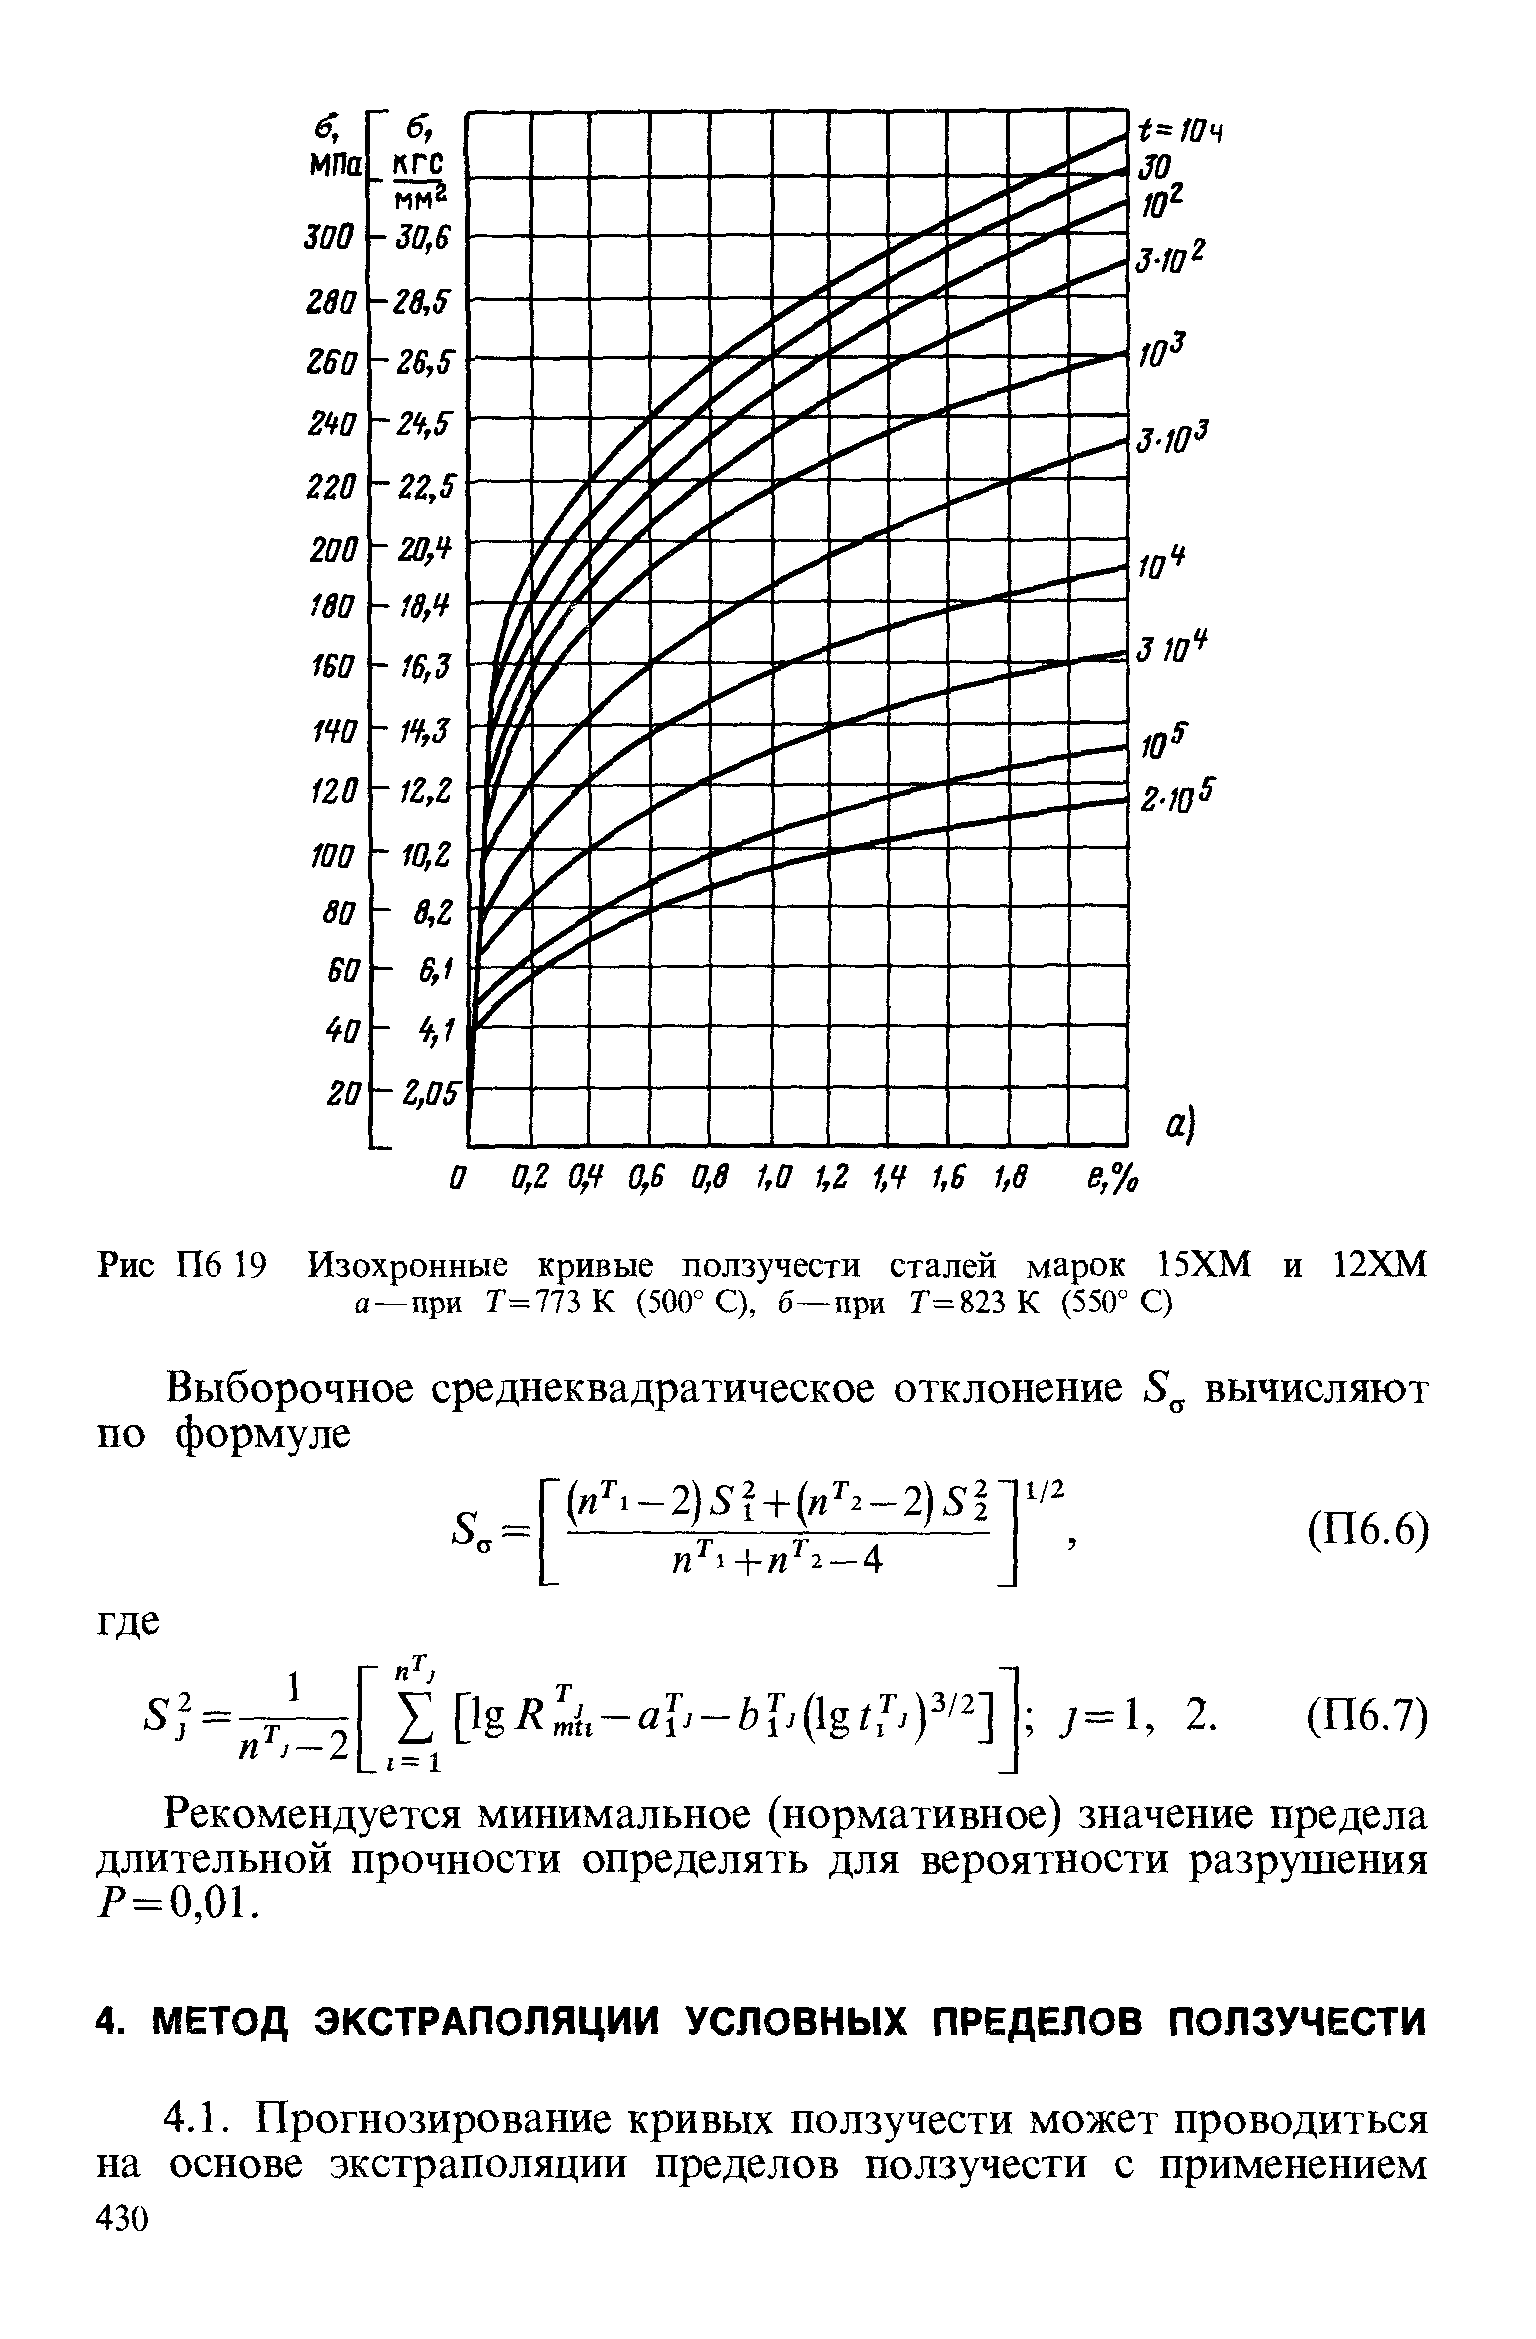 Рекомендуется минимальное (нормативное) значение предела длительной прочности определять для вероятности разрушения Р=0,01.
